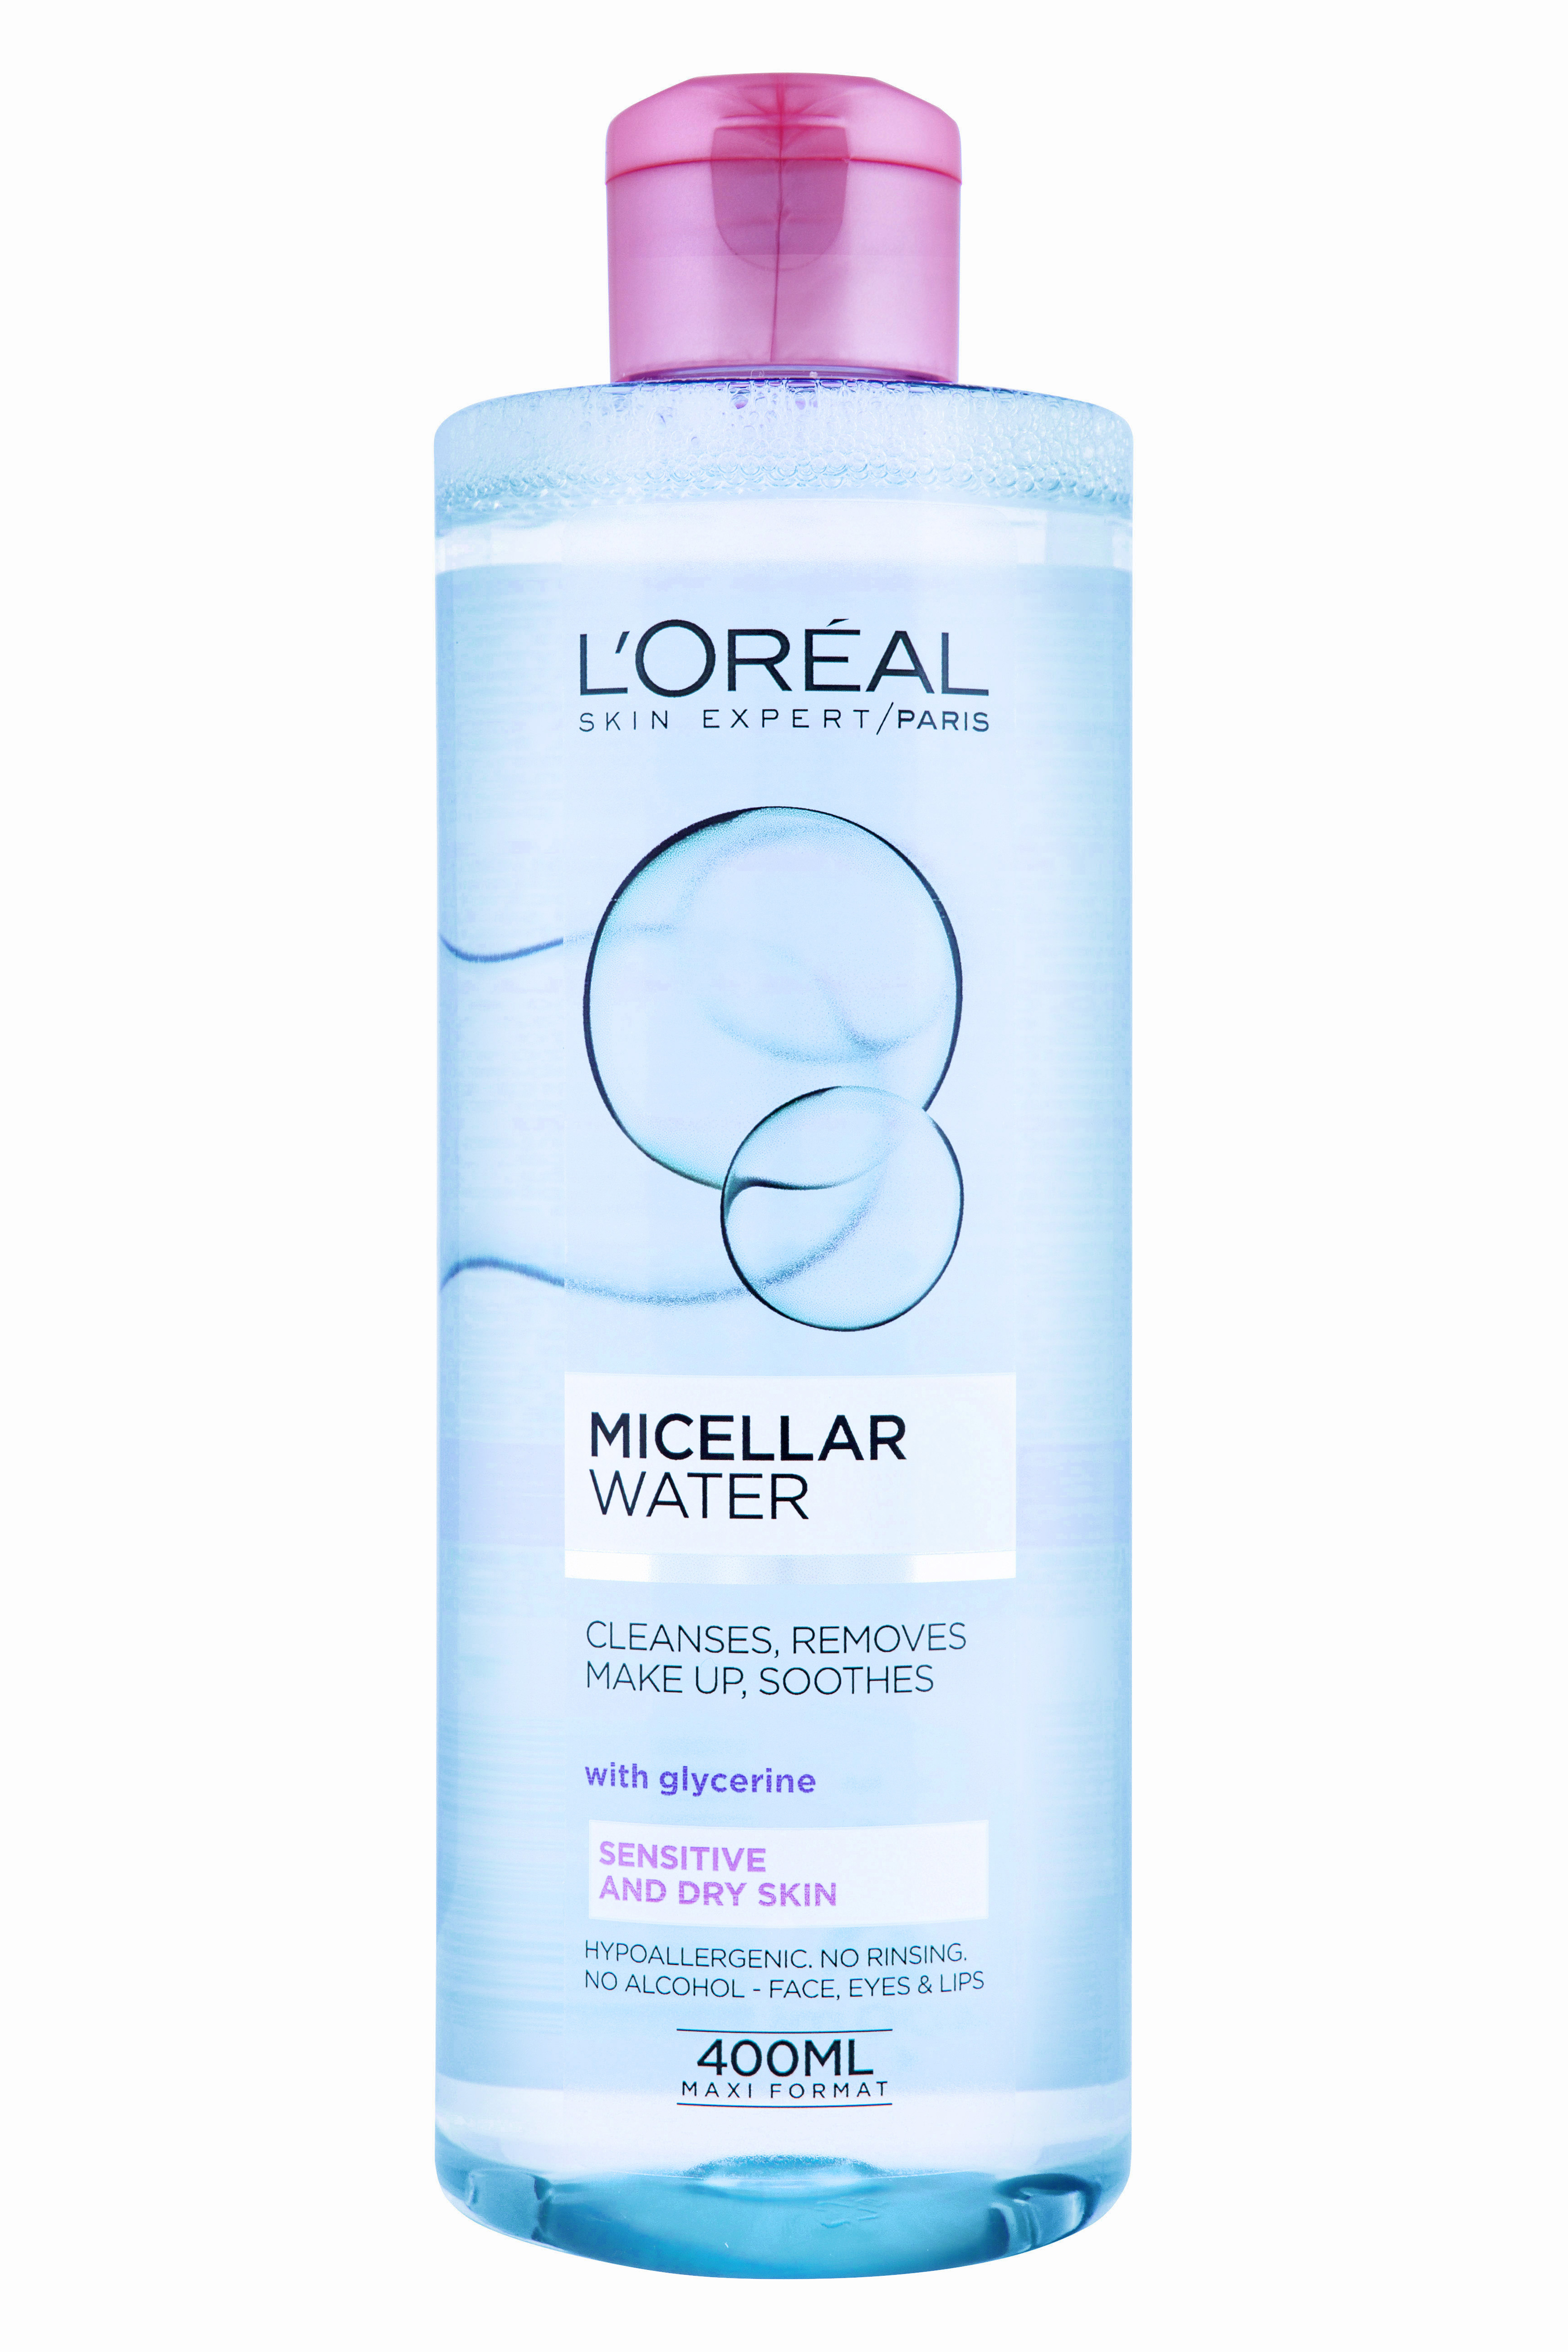 L'Oreal Paris - Skin expert - Micellar Water - Sensitiv and dry skin